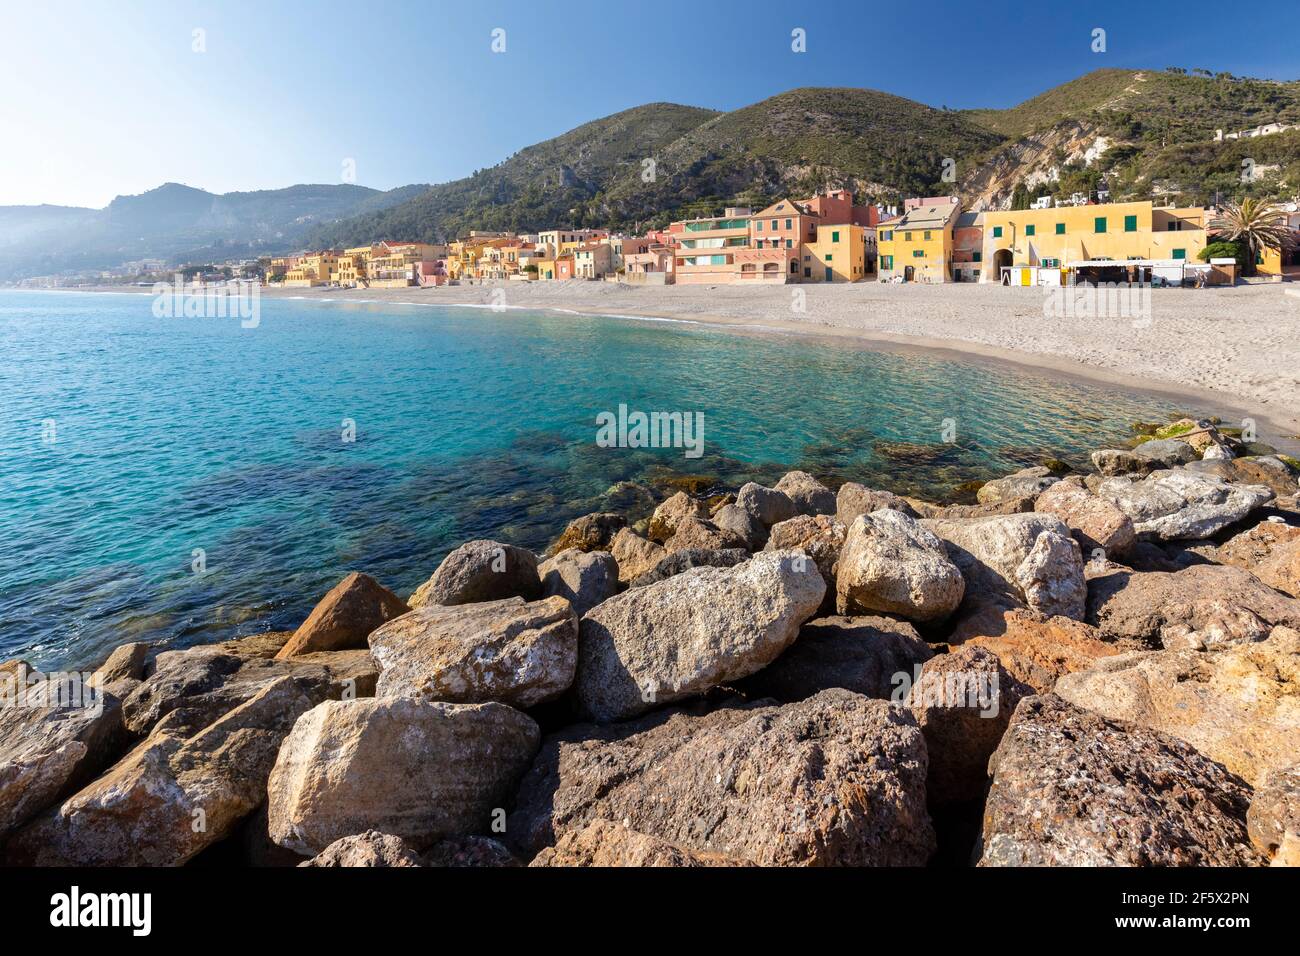 Vista delle case colorate e della spiaggia di Varigotti, finale Ligure, Savona, Ponente Riviera, Liguria, Italia. Foto Stock